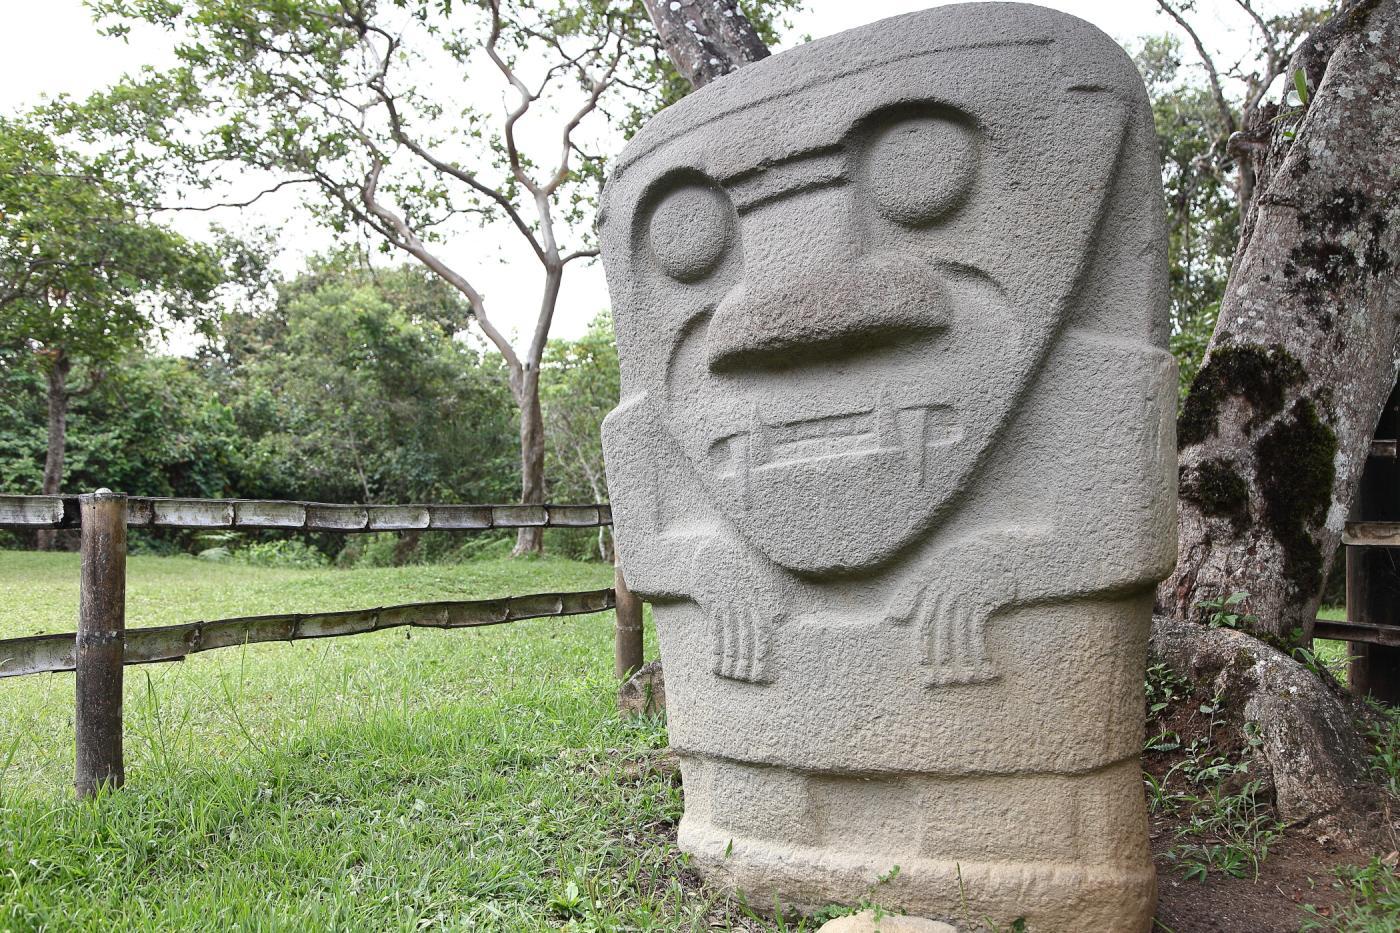 NHKラジオ第1マイあさ！2月はコロンビアの世界遺産「サン・アグスティン遺跡公園」をご紹介